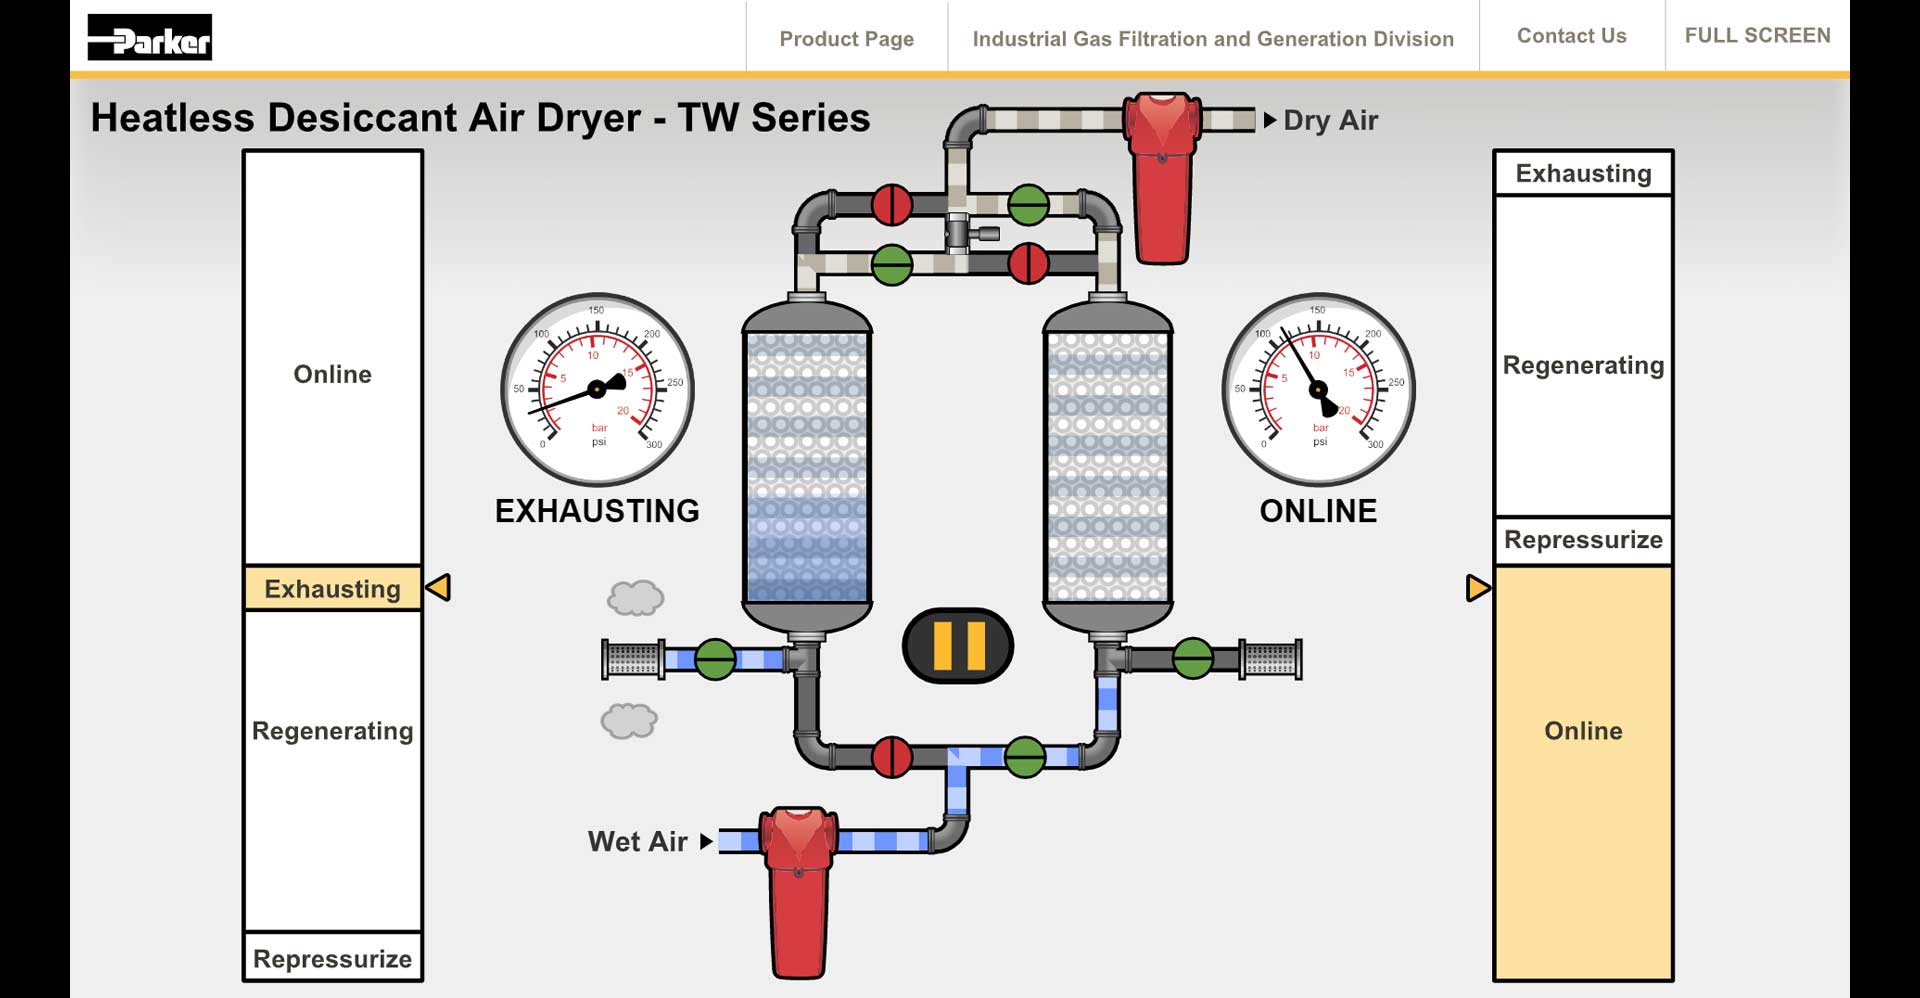 Heatless Desiccant Air Dryer - TW Series